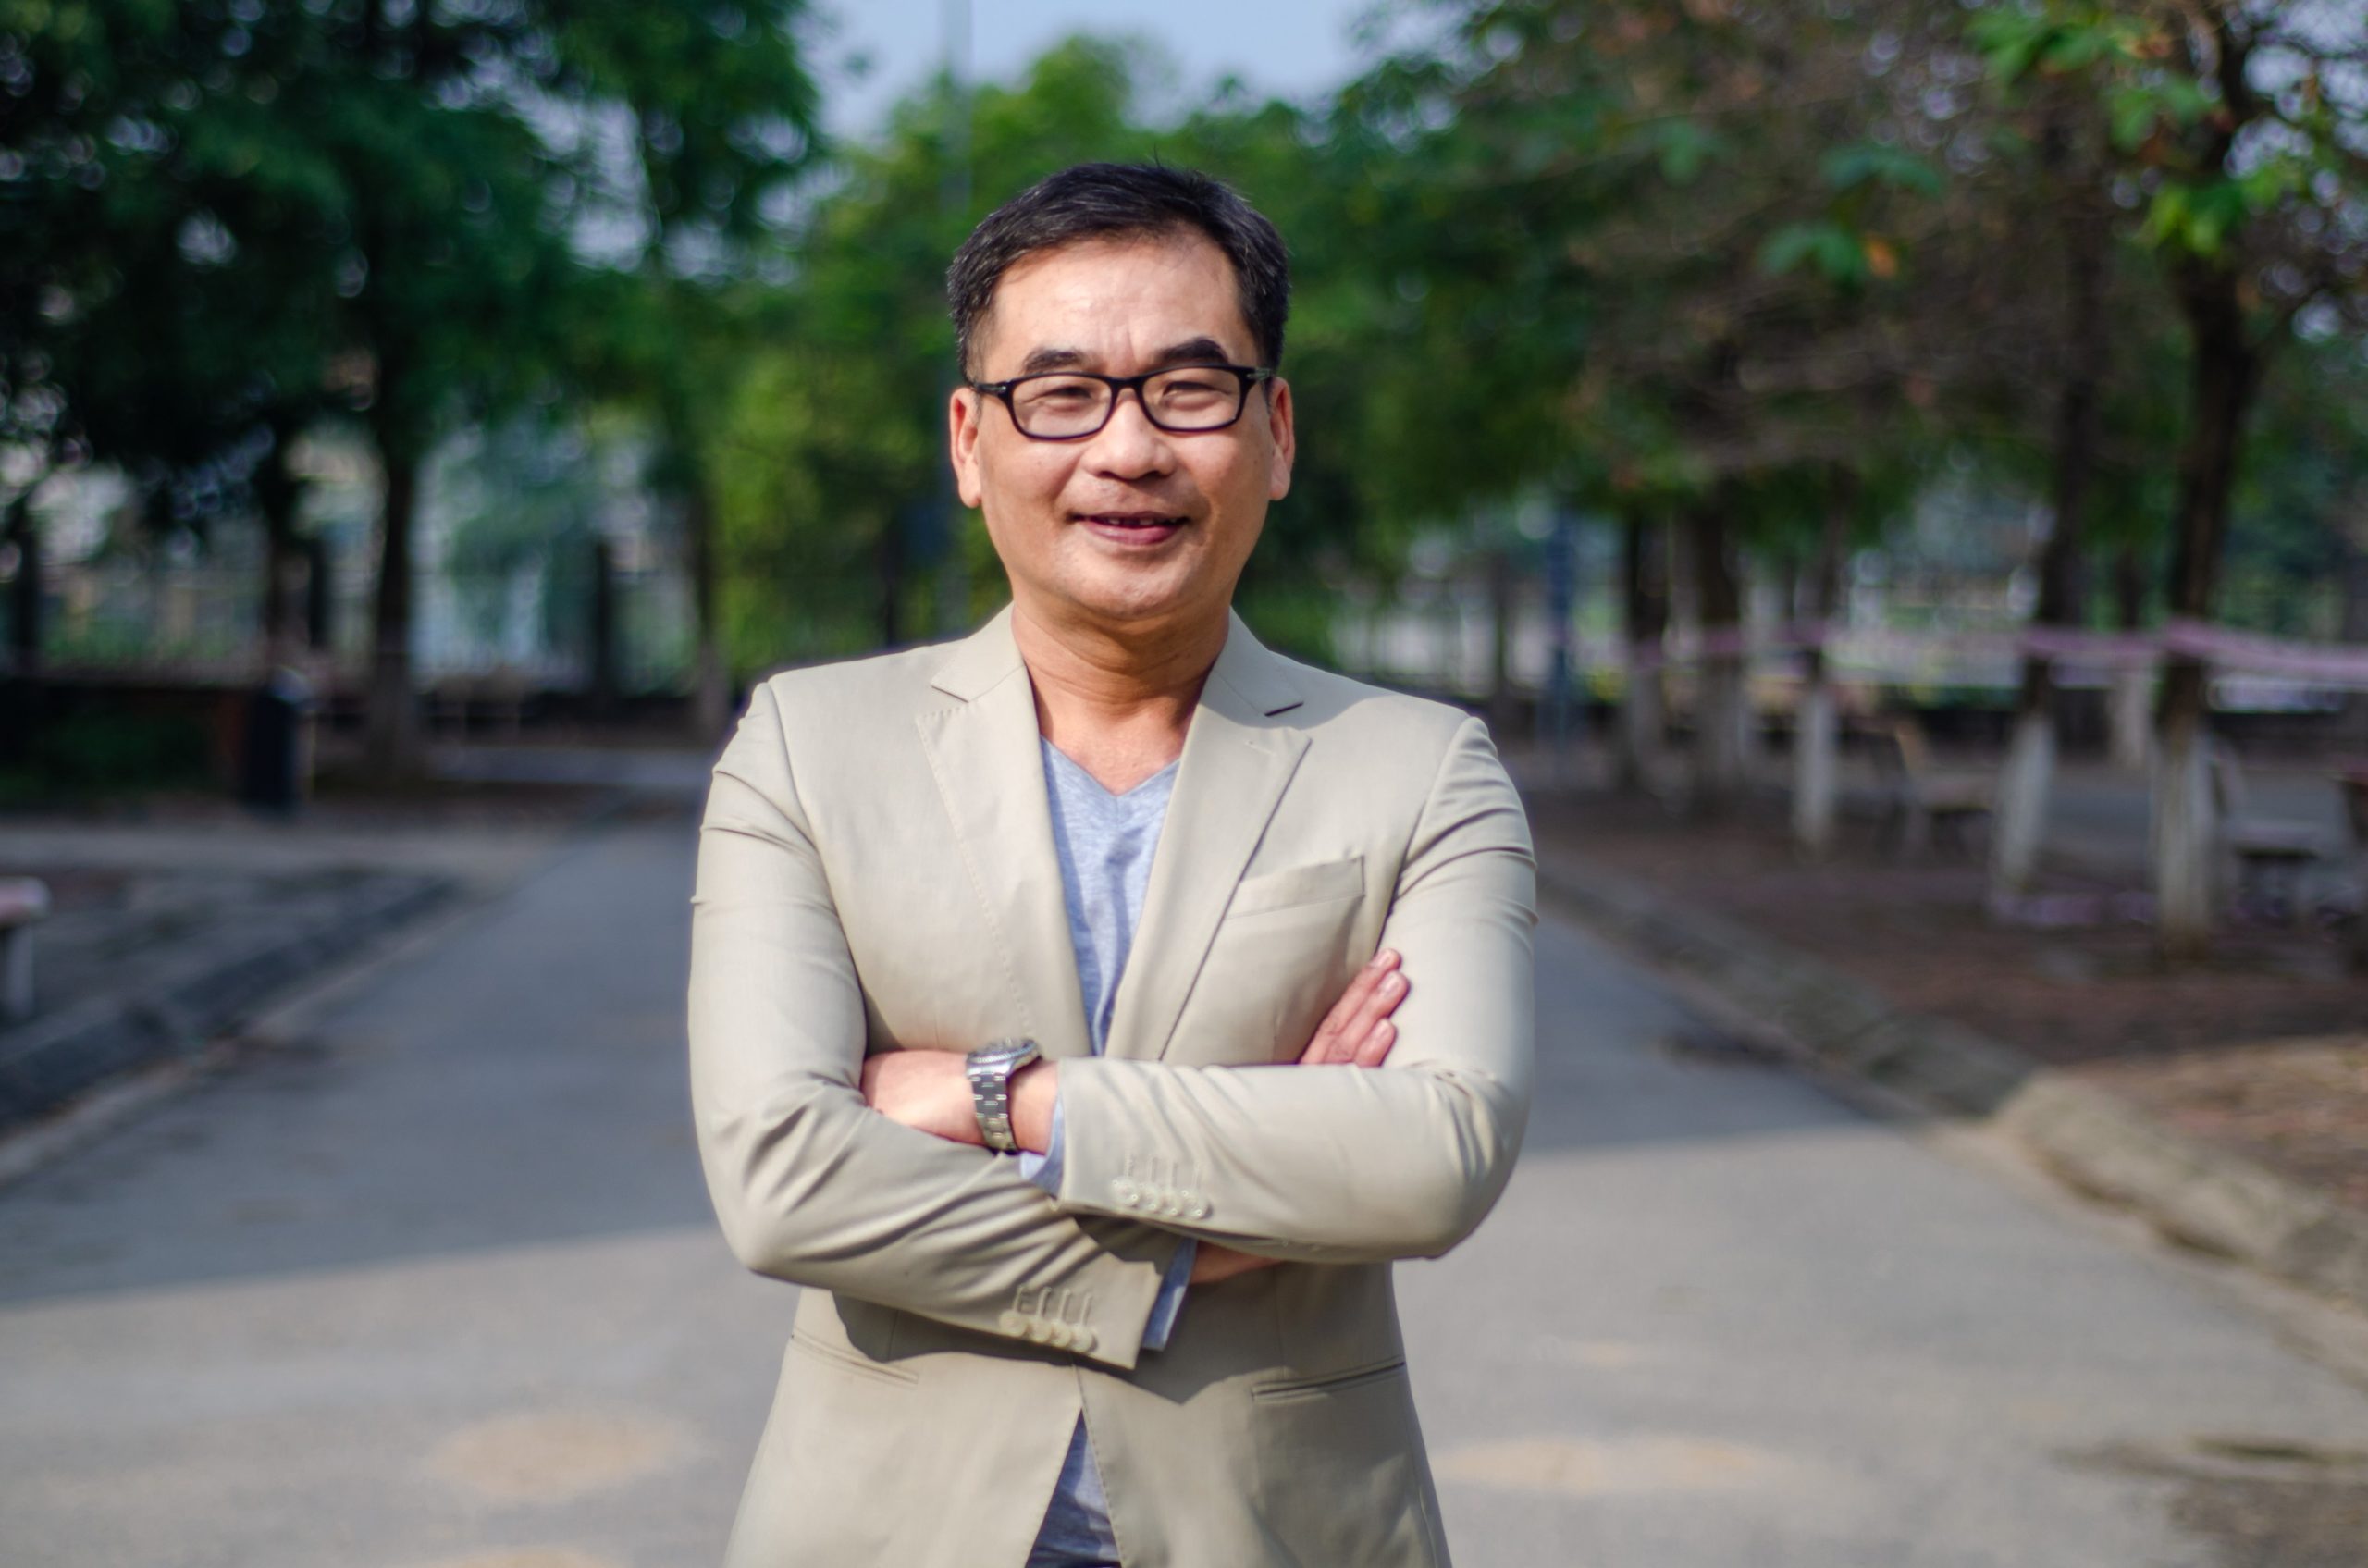 Tân Giám đốc Chiến lược công ty CP Lendbiz - TS. Nguyễn Hoàng Nam